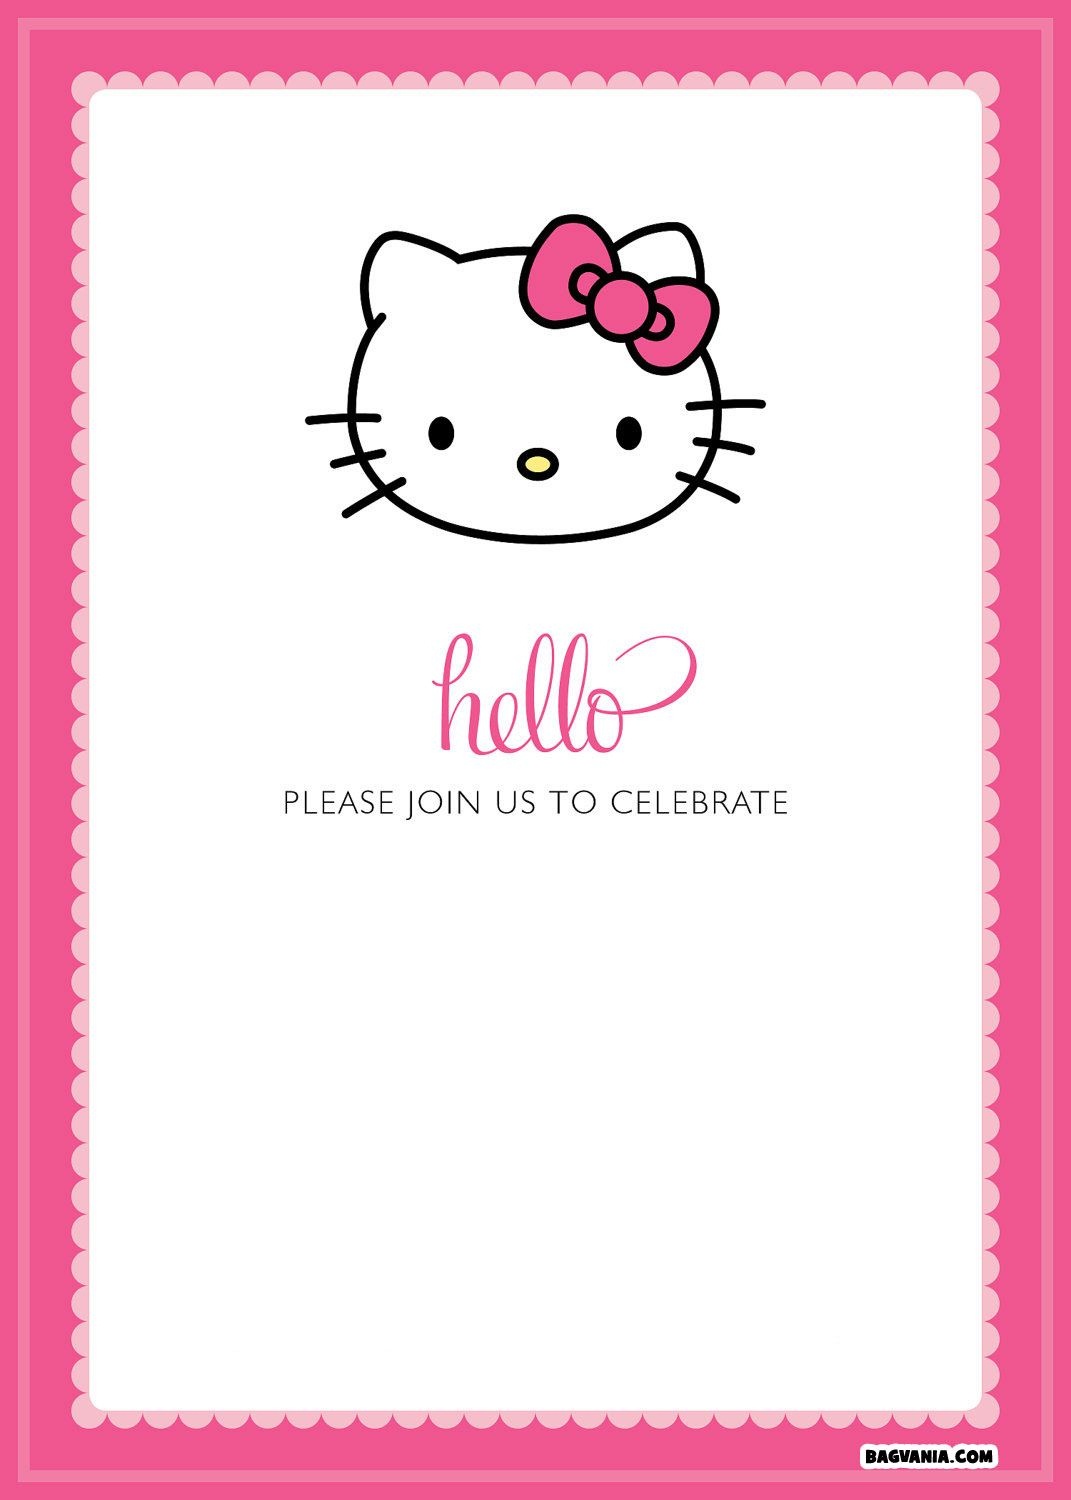 Free Printable Hello Kitty Birthday Invitations – Bagvania Free - Free Printable Hello Kitty Pictures